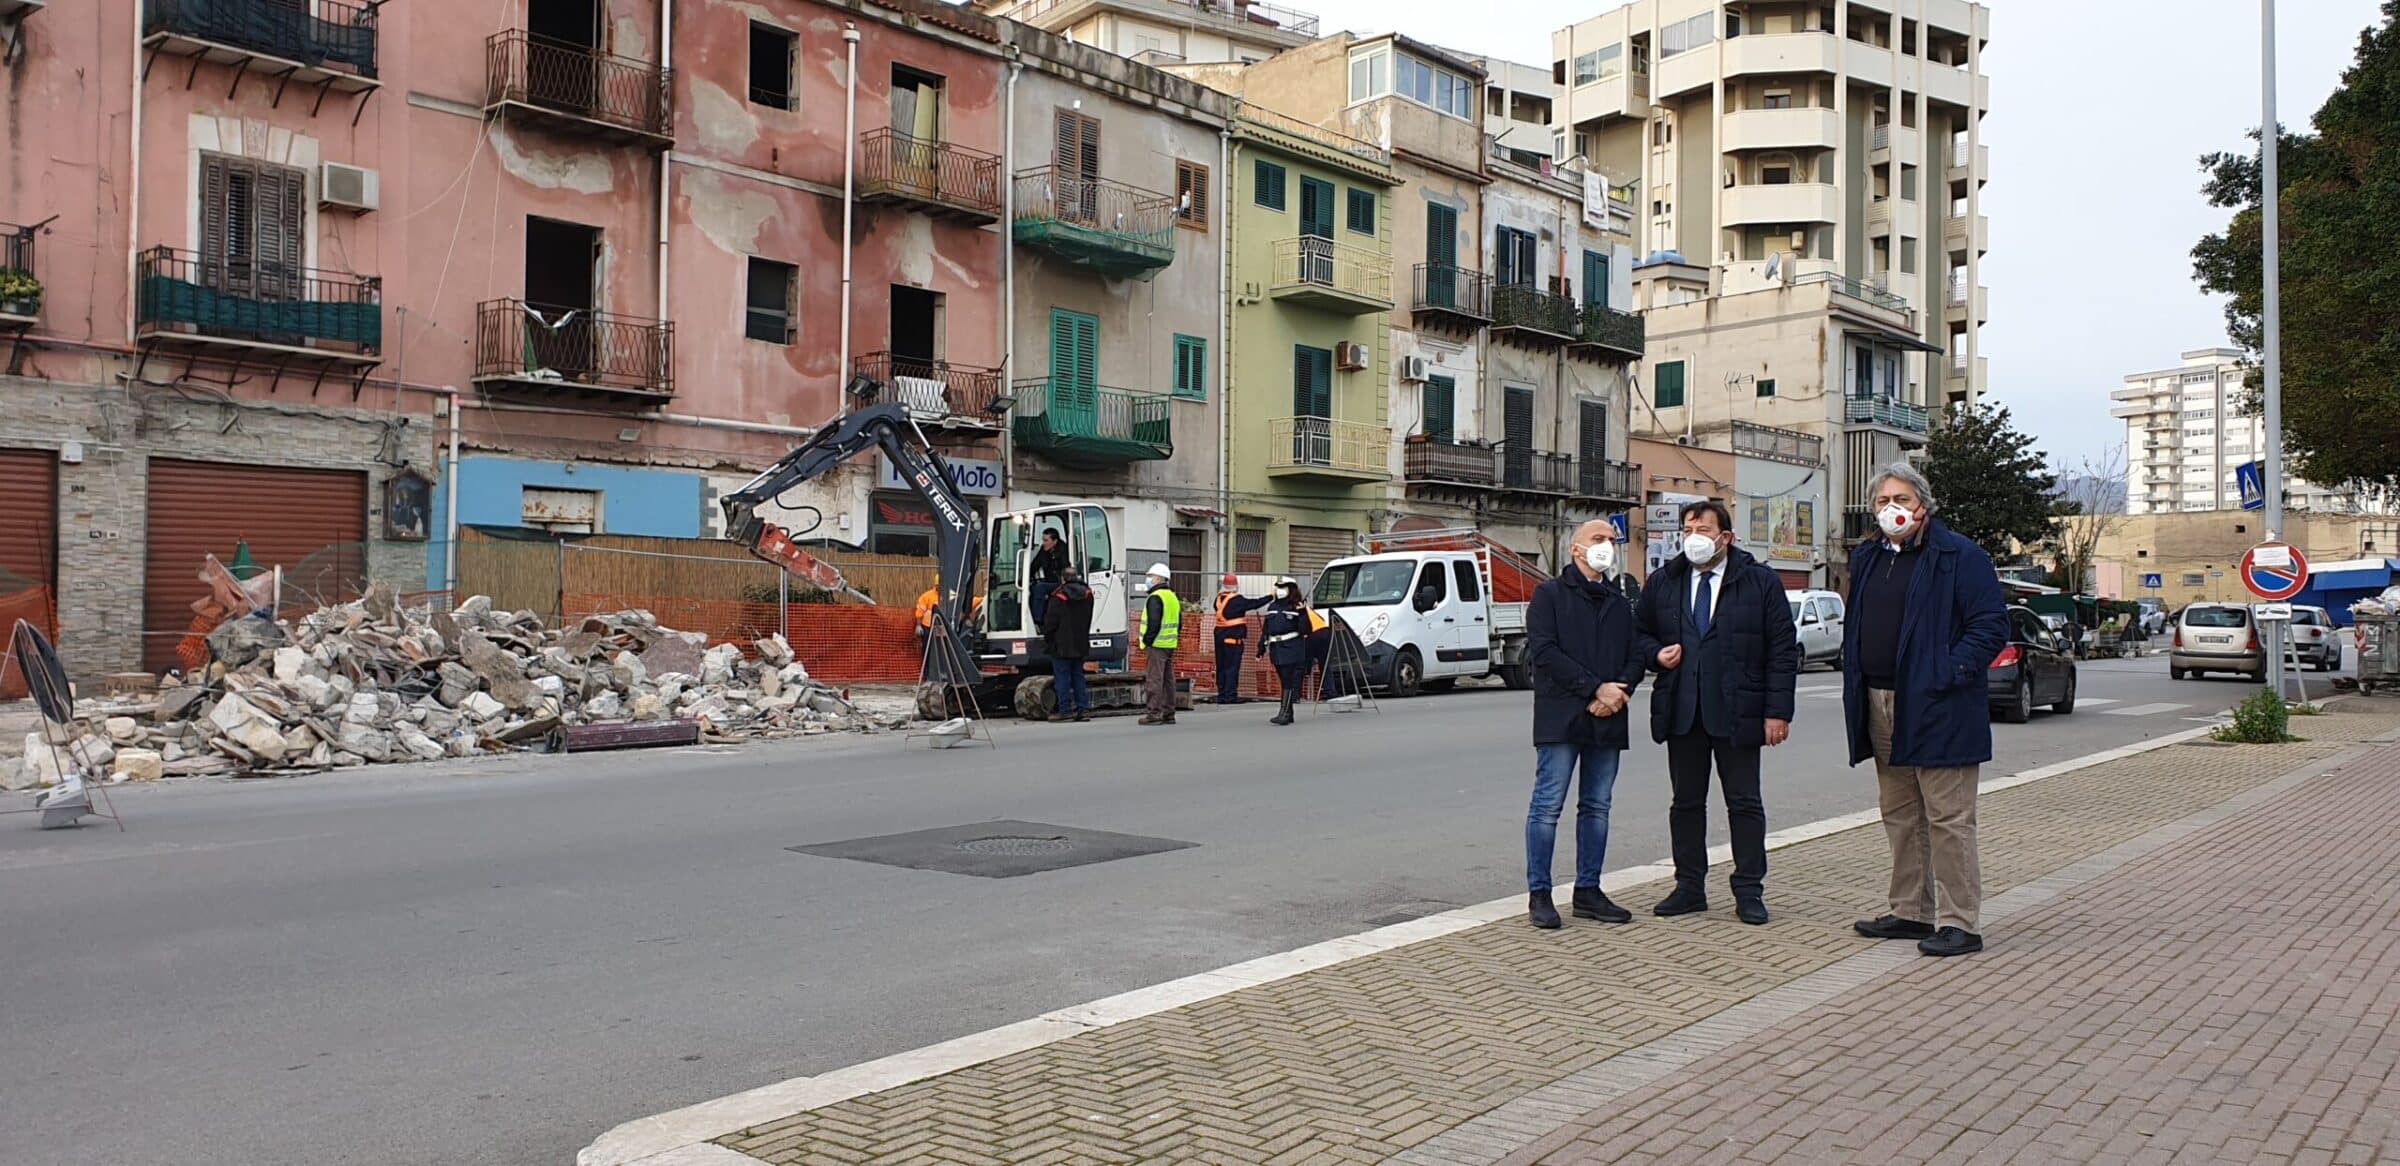 Palermo, demolito un chiosco in condizioni precarie. Caracausi: “Piccolo tassello verso la riqualificazione della Costa sud”